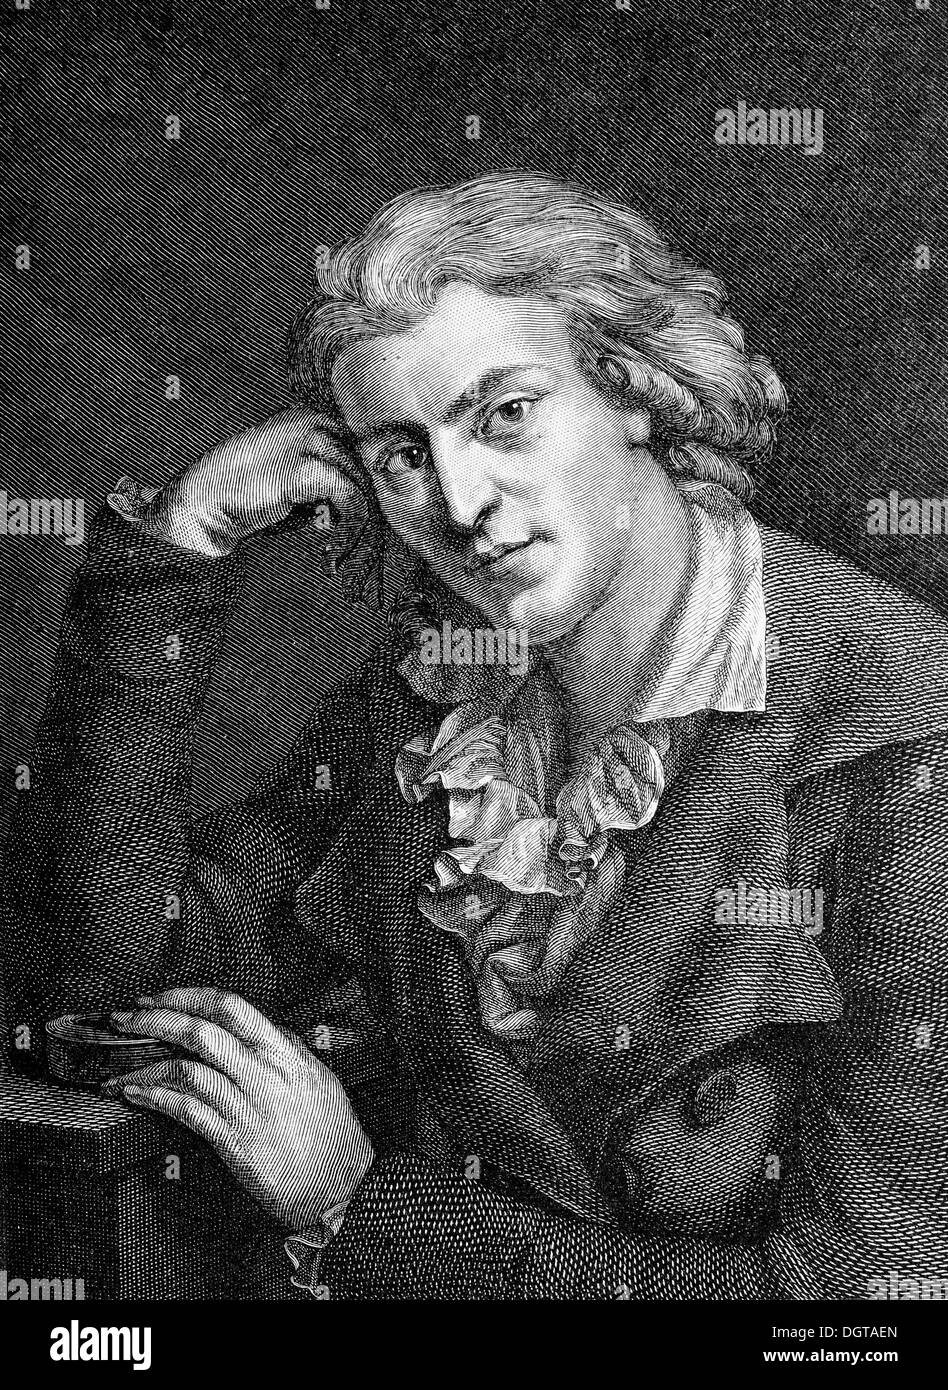 Schiller in 1787, historical illustration in Deutsche Literaturgeschichte or German literature from 1885 Stock Photo